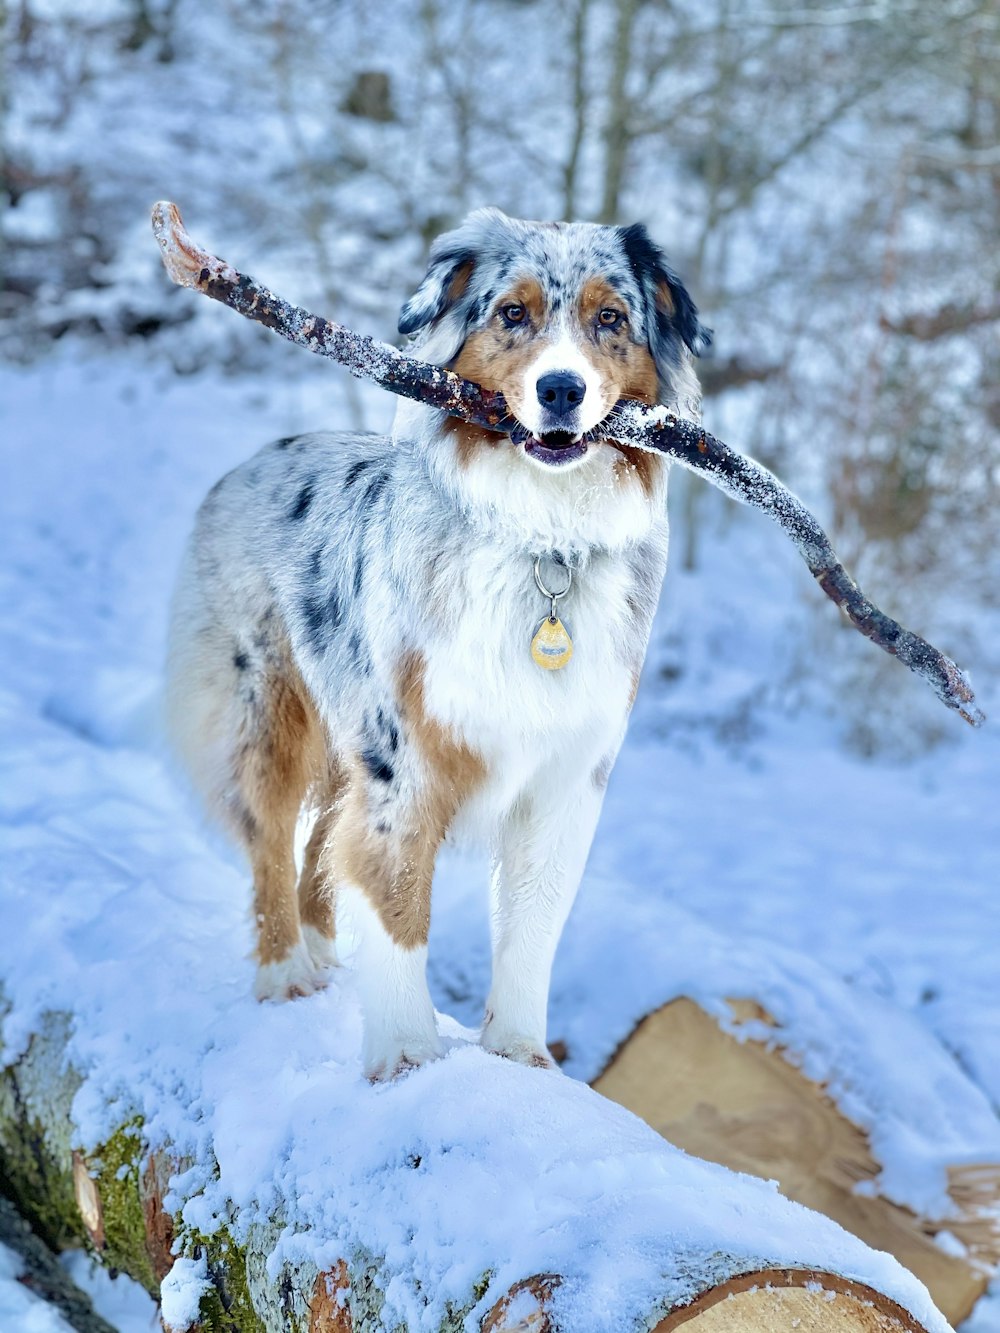 Cane a pelo corto bianco e marrone su terreno coperto di neve durante il giorno